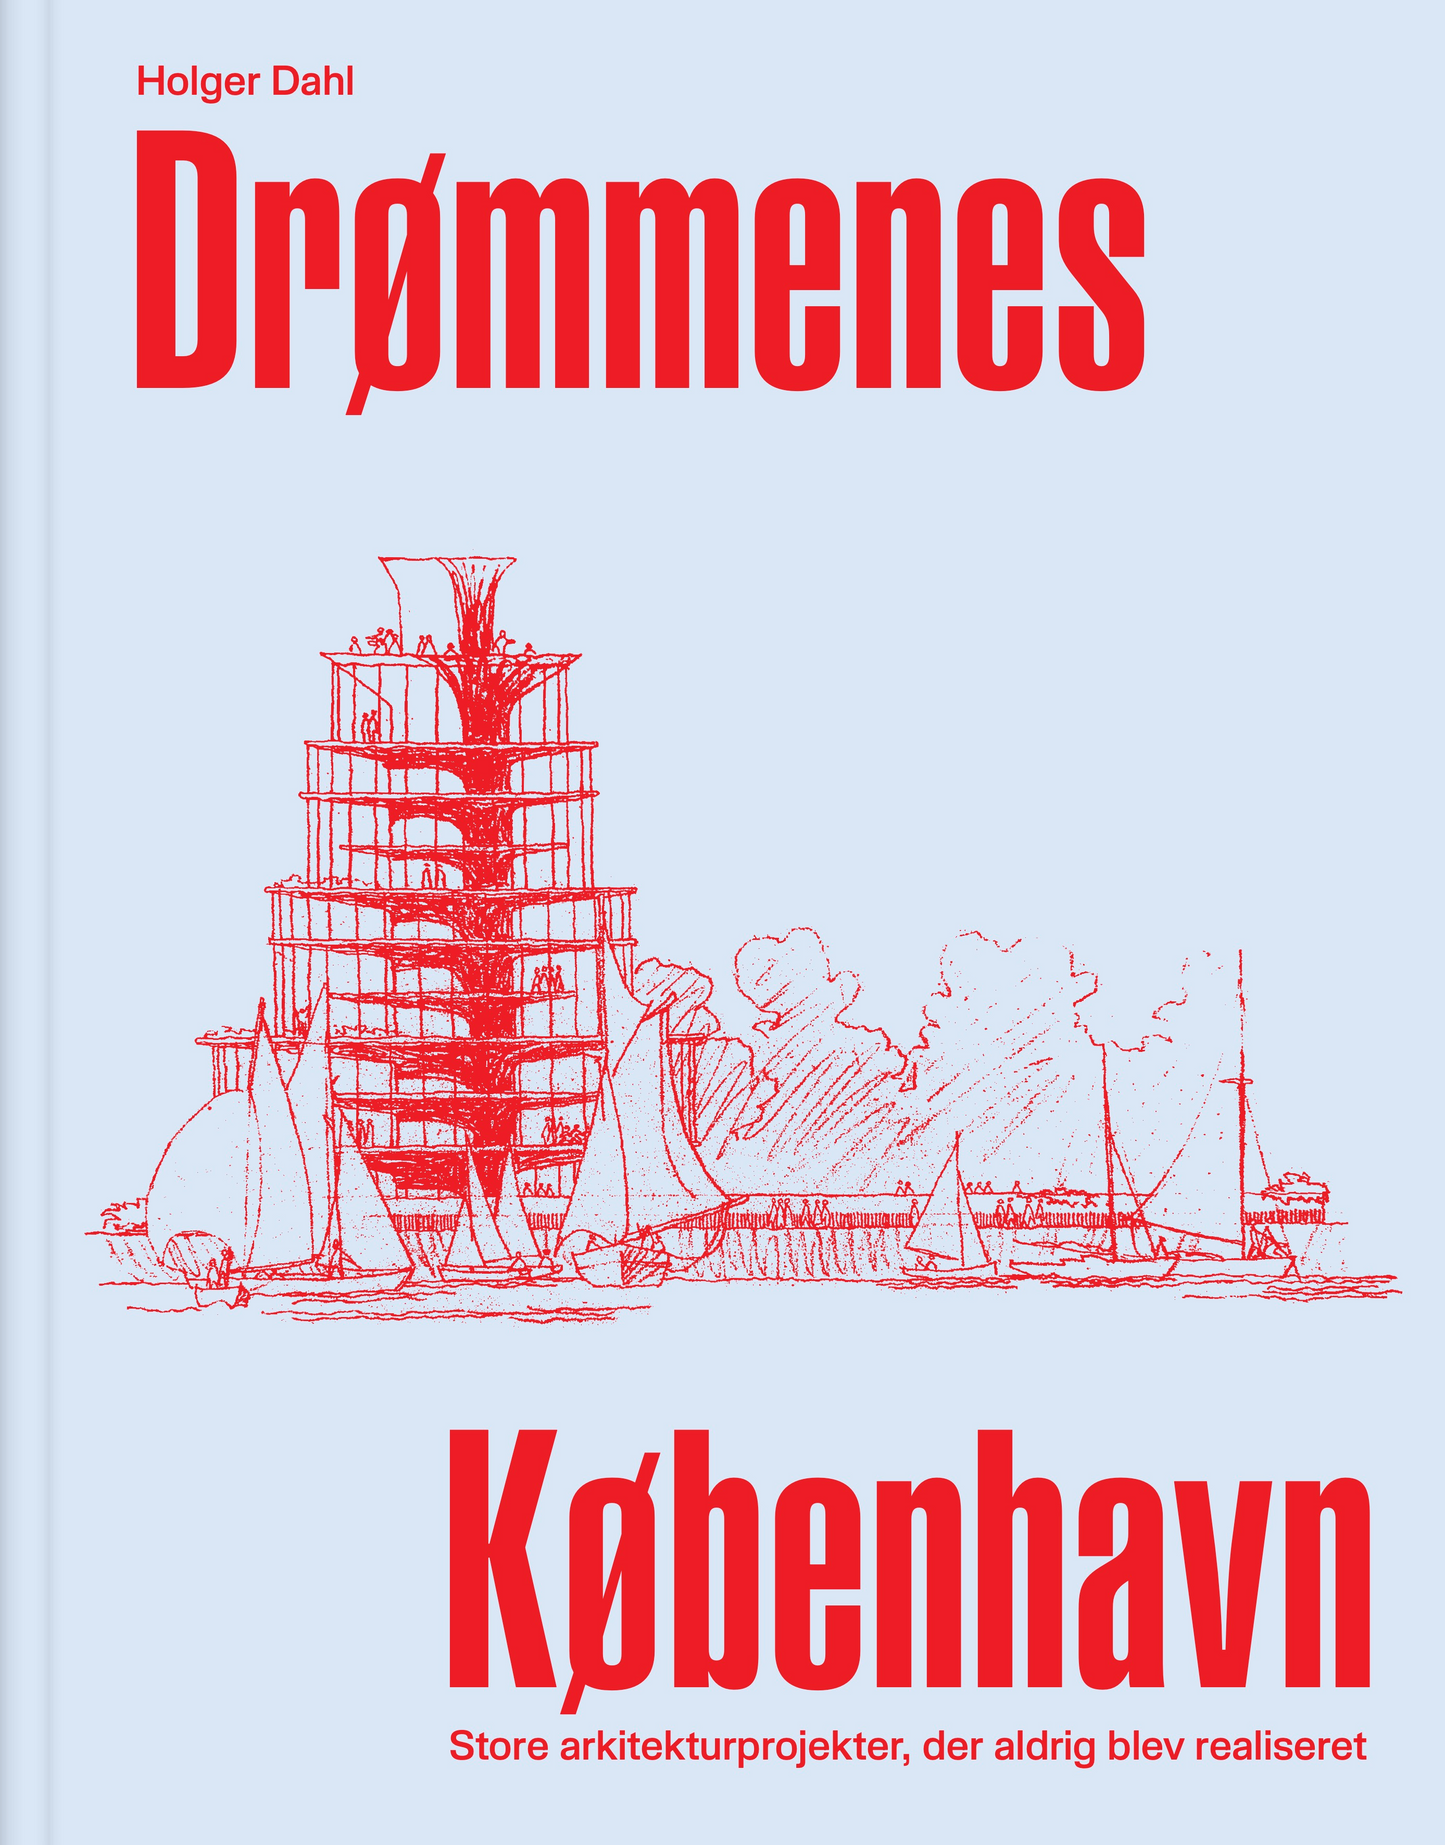 Drømmenes København – Store arkitekturprojekter, der aldrig blev realiseret